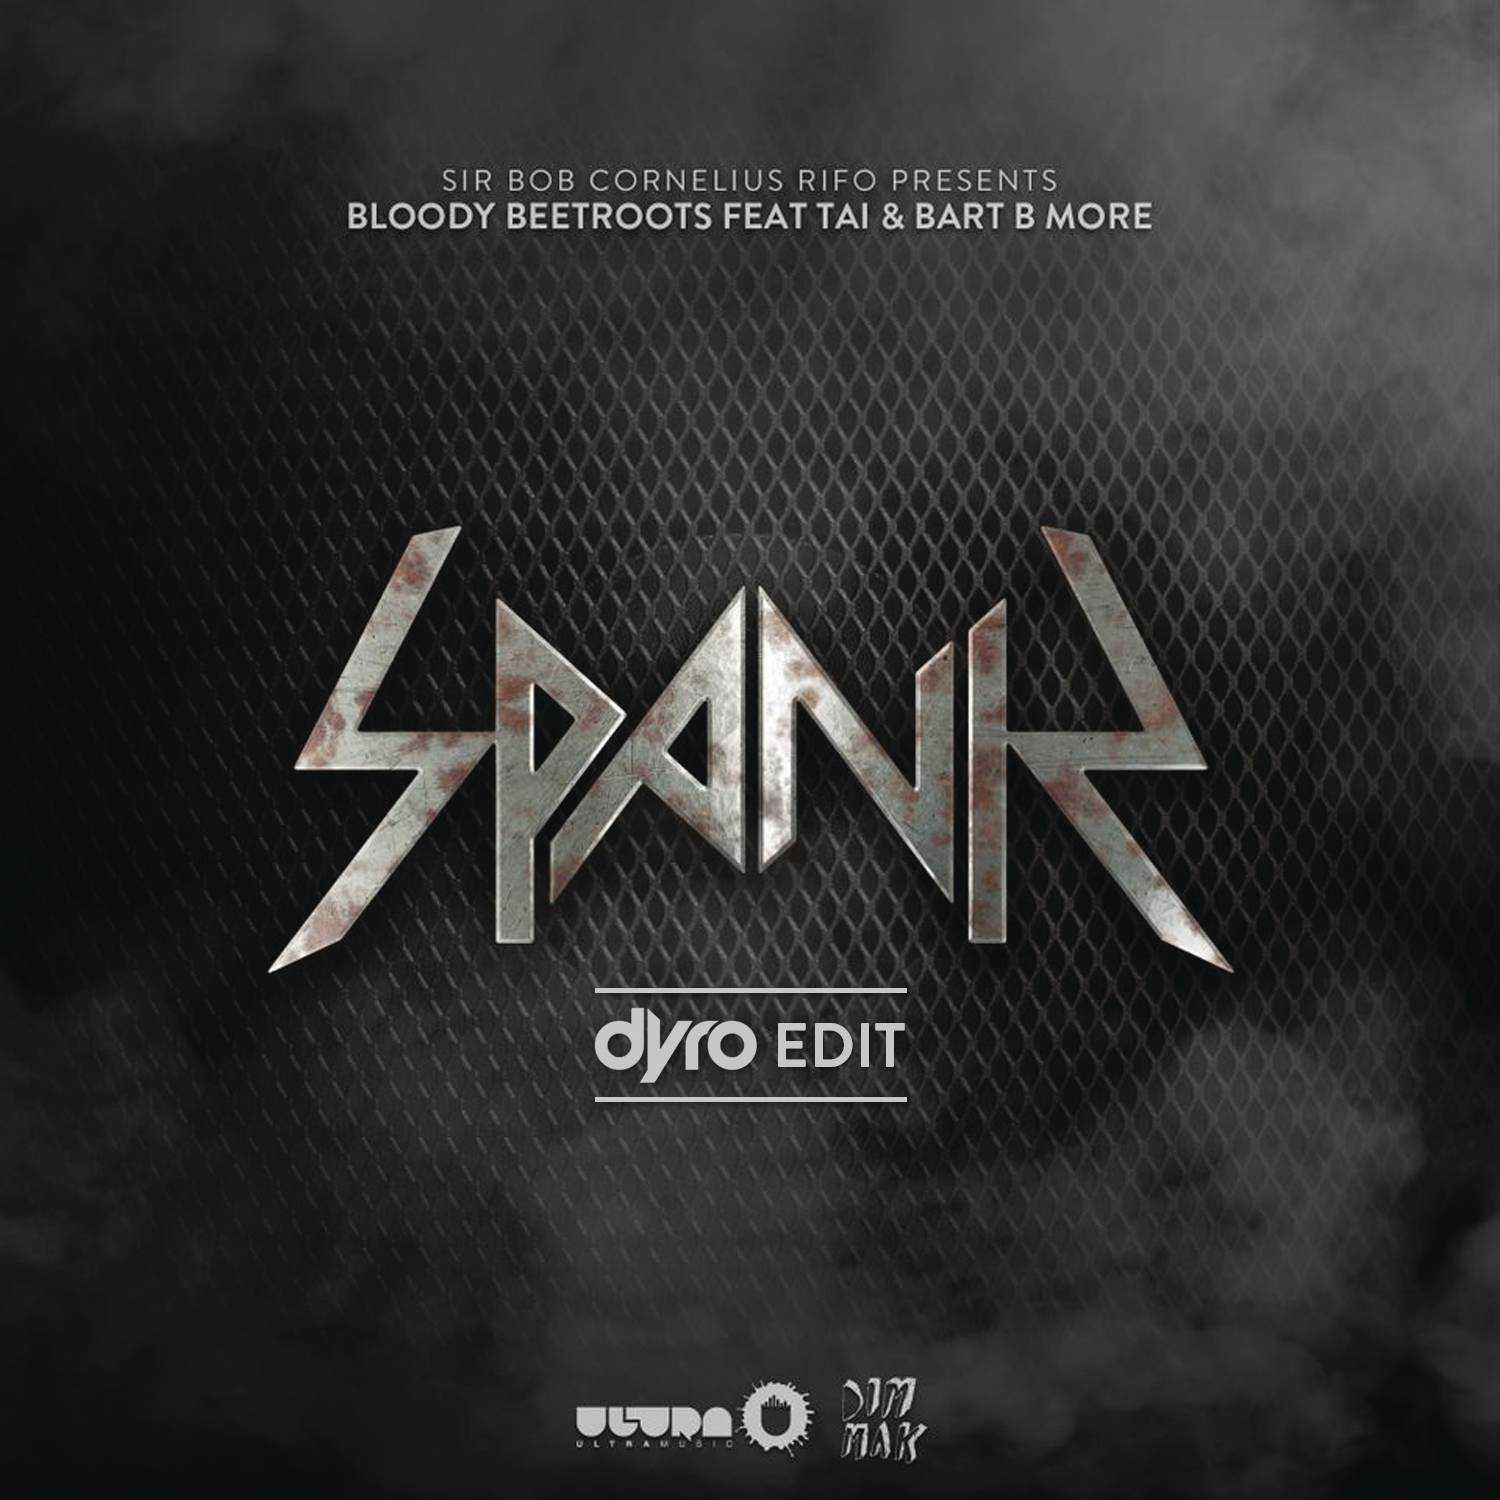 Spank (Dyro Edit)专辑